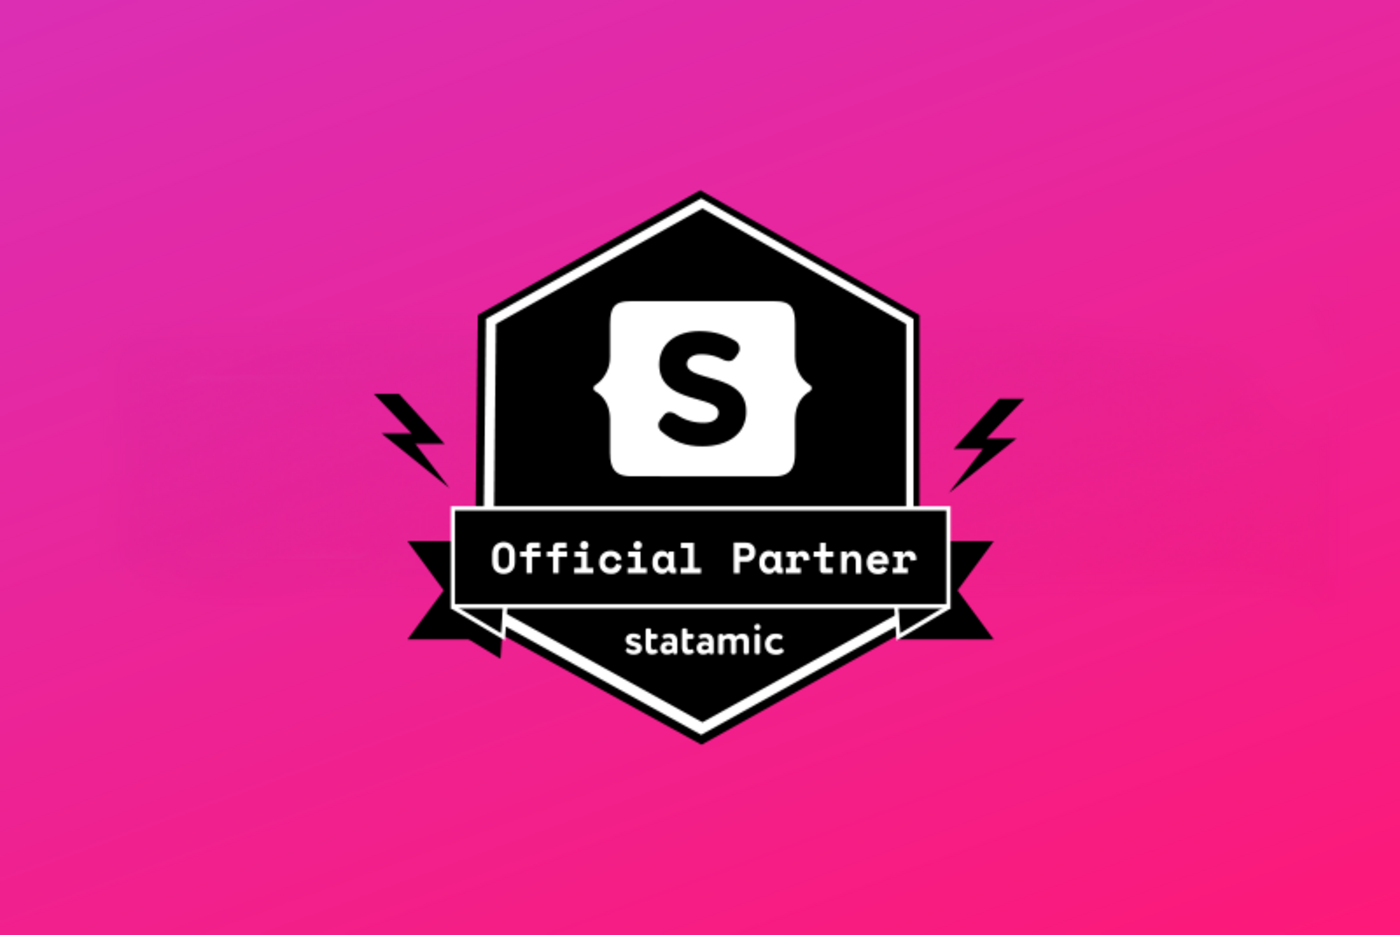 Das Logo eines Statamic-Partners, schwarz-weiß auf pinkem Hintergrund.